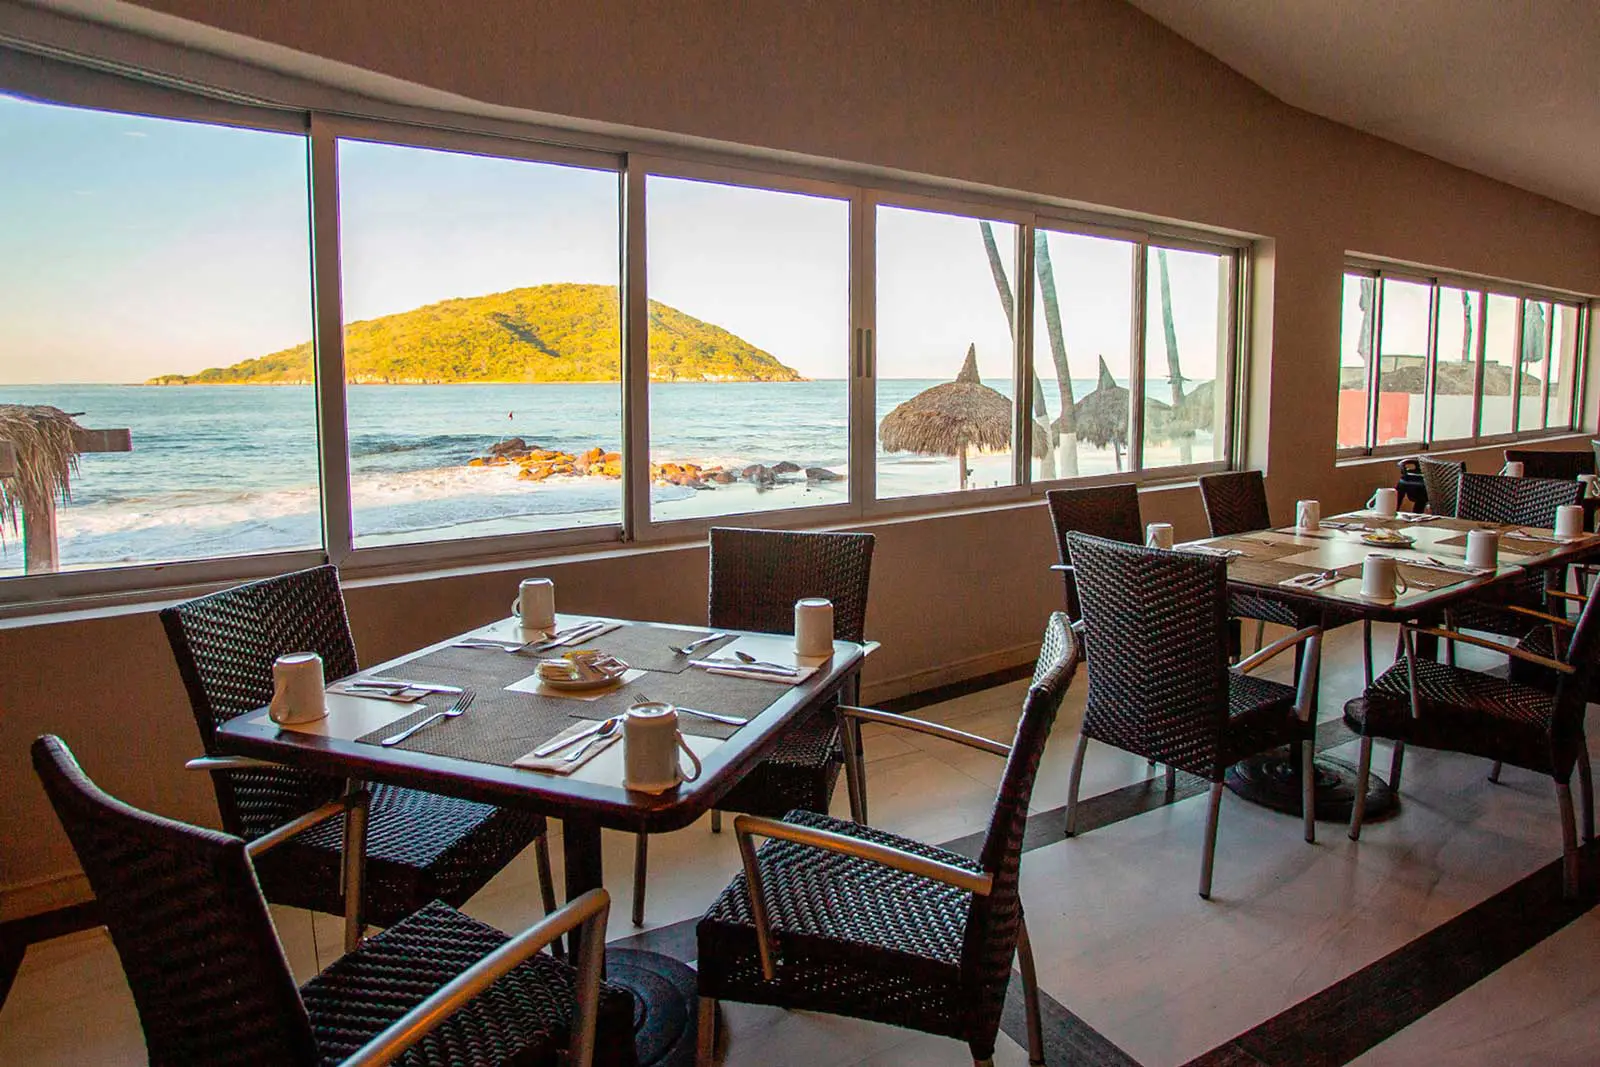 Restaurante Pelican con vista al mar, hotel Star Palace Mazatlán